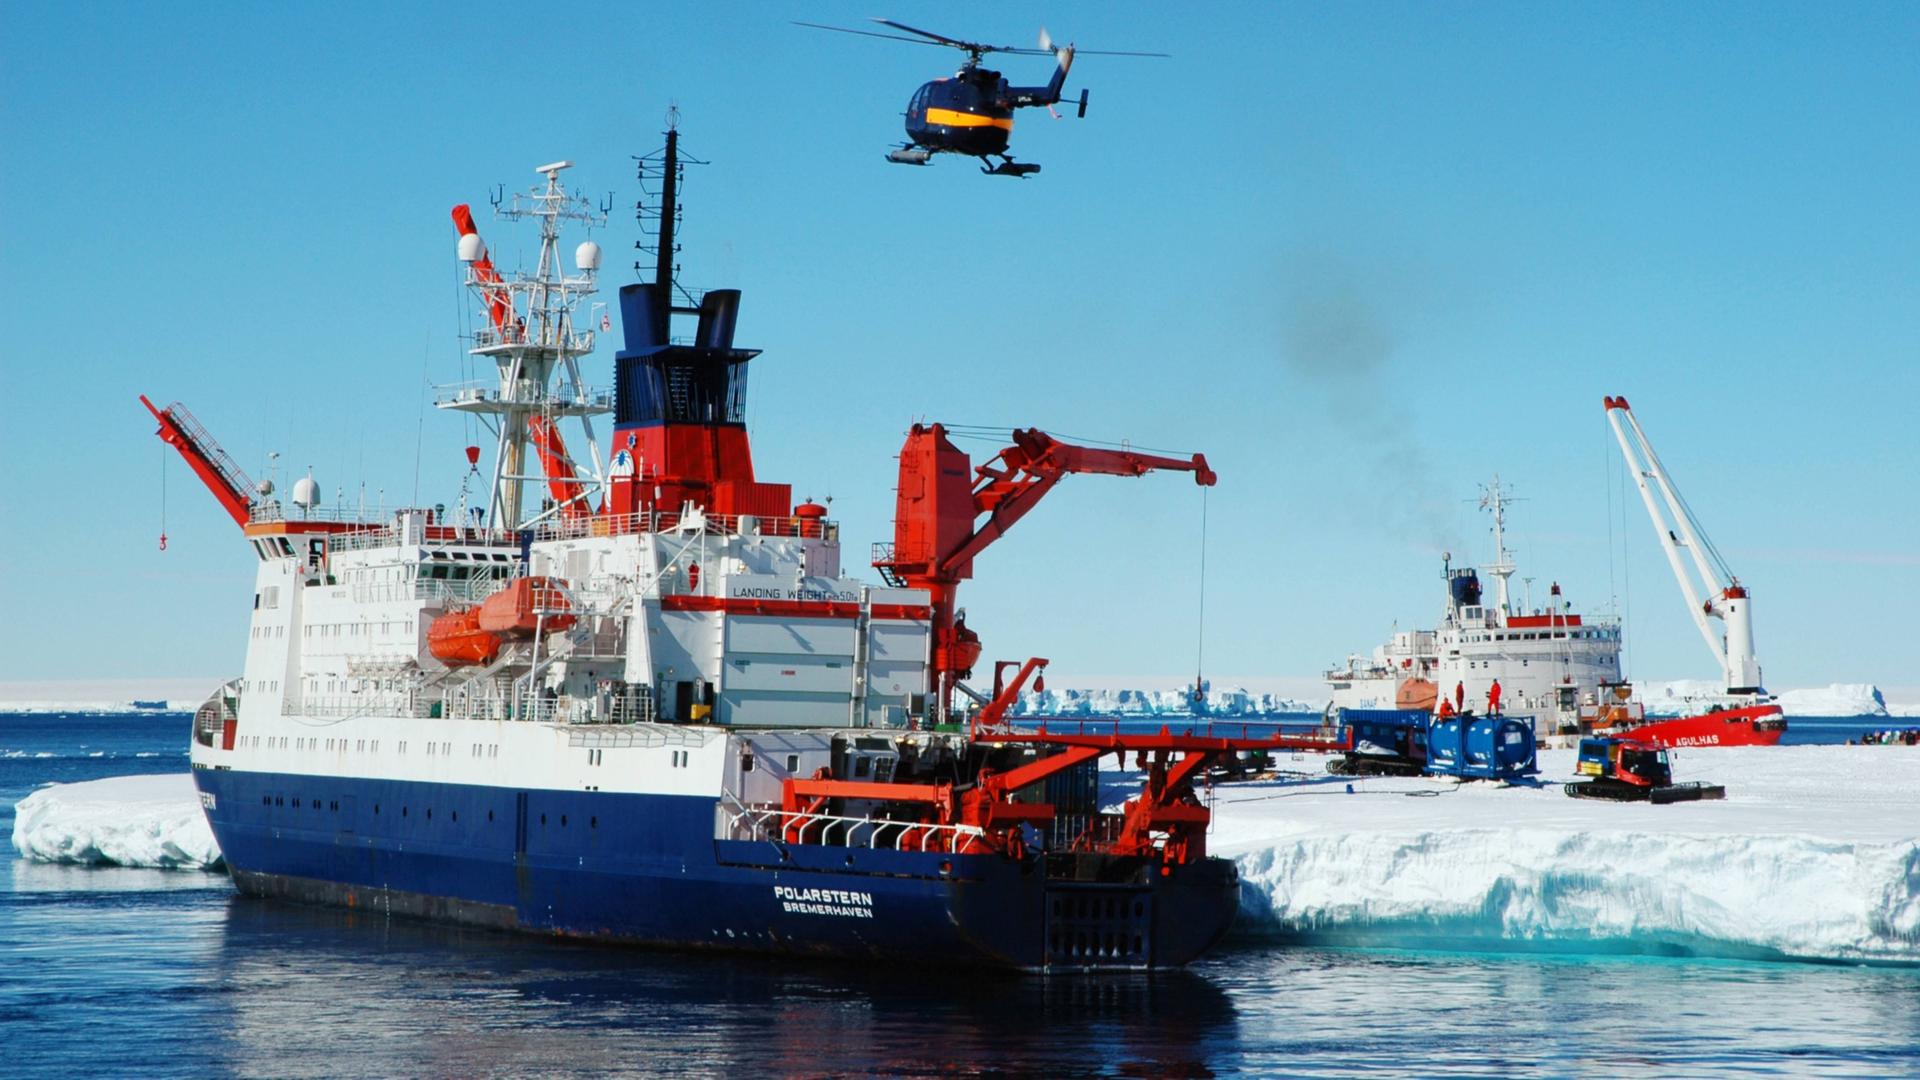 Entladung des Forschungsschiffes Polarstern in der Antarktis